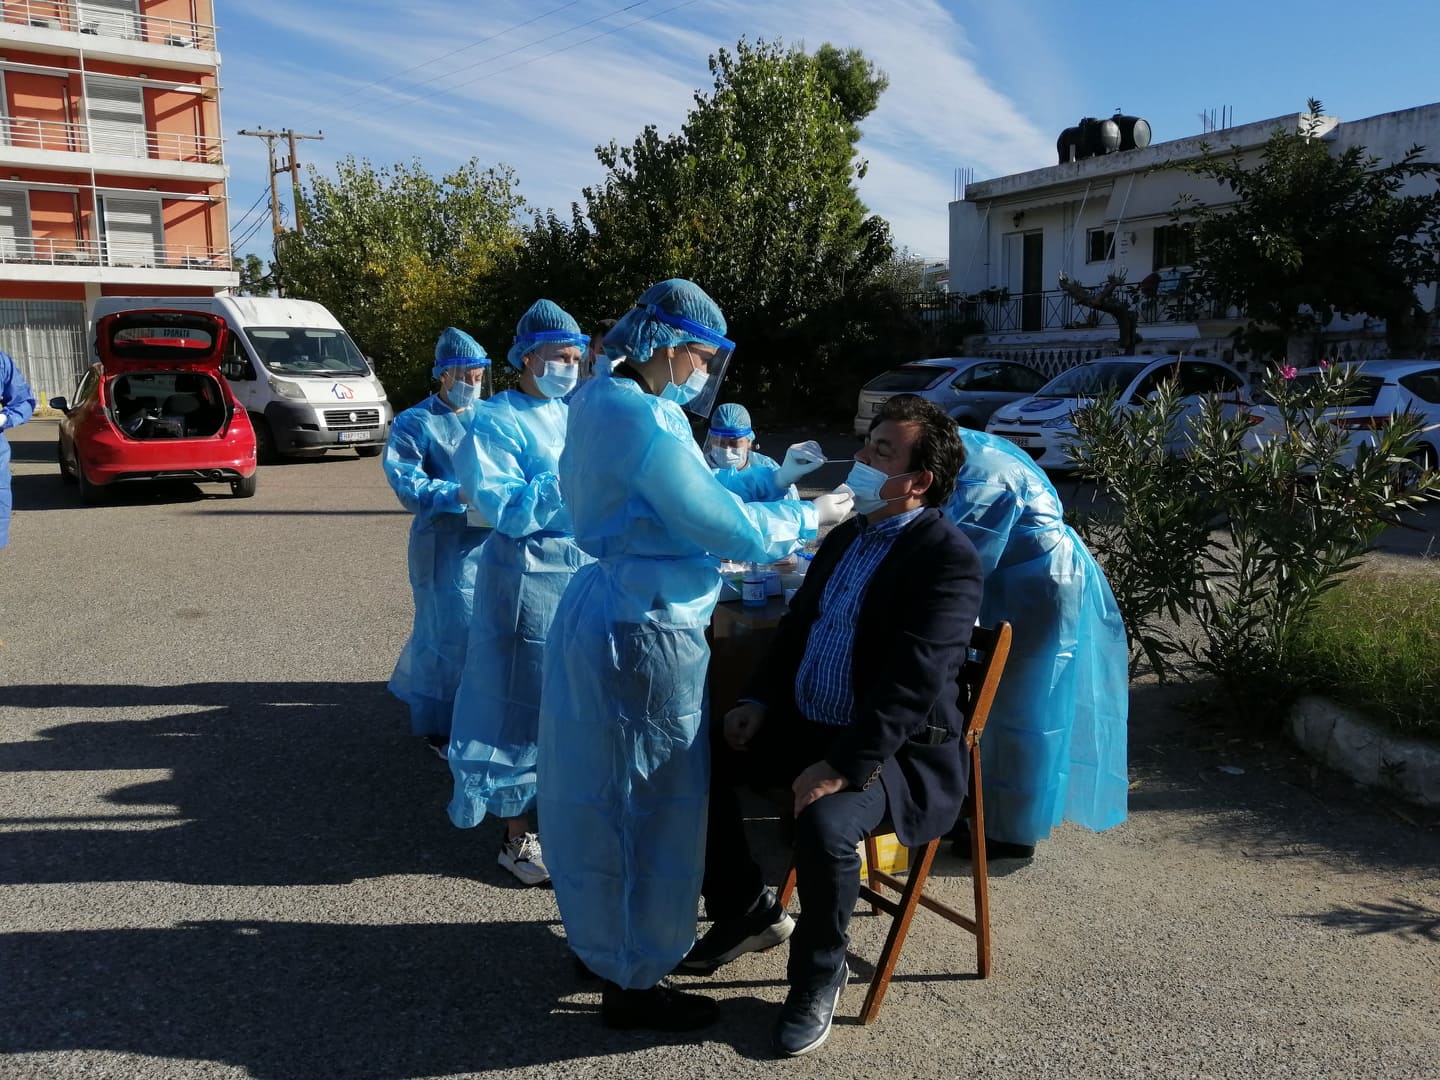 Δήμαρχος Πύργου Παναγιώτης Αντωνακόπουλος: "Η πραγματικότητα με τα κρούσματα covid-19 είναι παραπάνω από τους αριθμούς- Στόχος μας ο περιορισμός της διασποράς του ιού”- Rapid test σε διερχόμενους πολίτες με κλιμάκια του ΕΟΔΥ- Έγιναν 97 τεστ και βγήκαν όλα αρνητικά